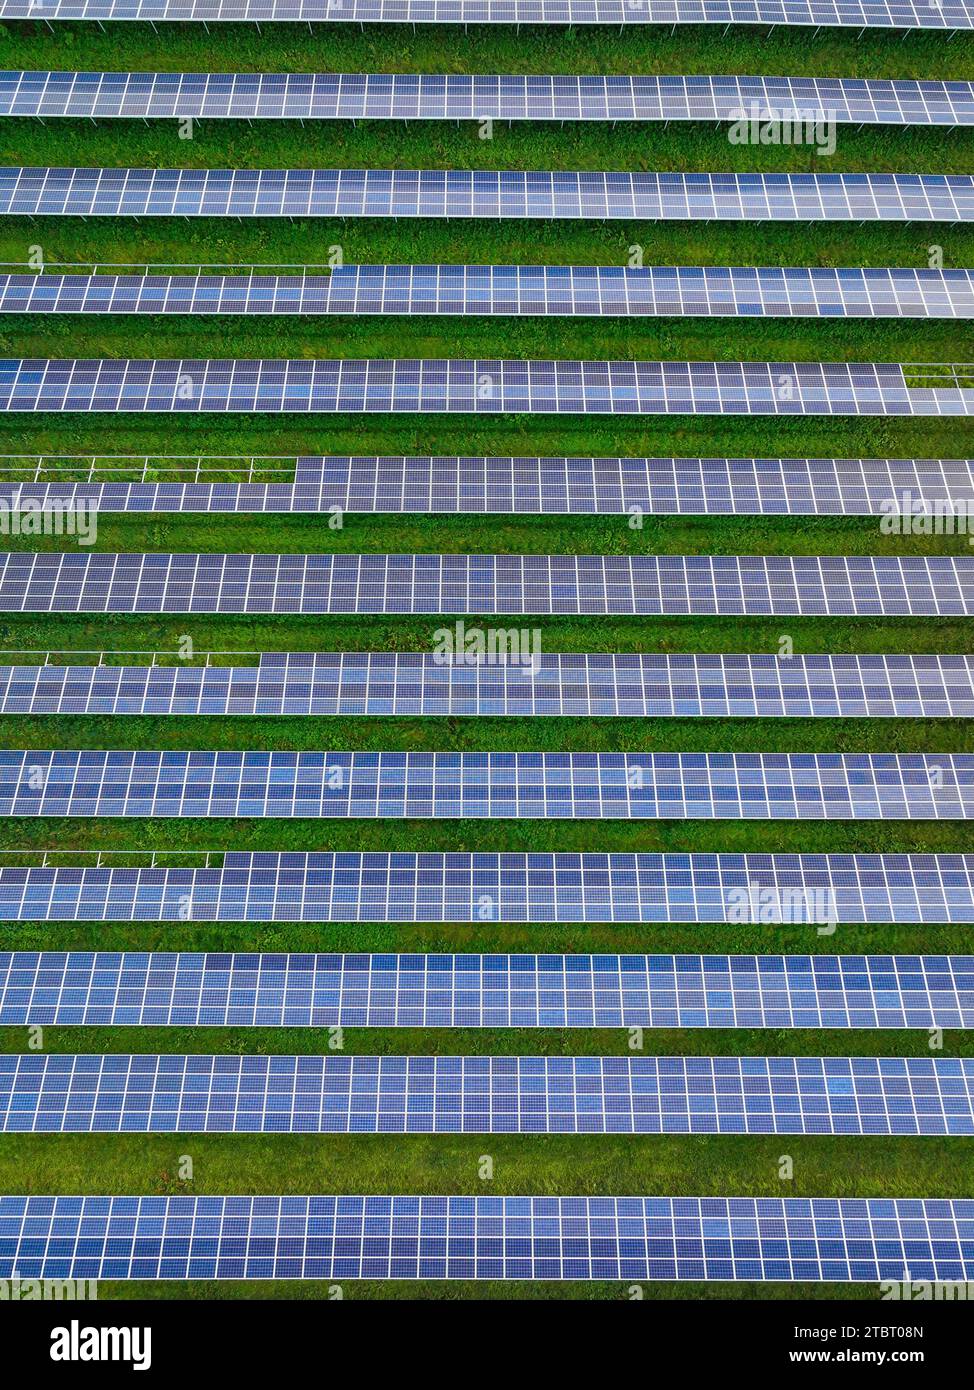 Parc solaire Oberseifersdorf, Zittau, Saxe, Allemagne, Europe Banque D'Images